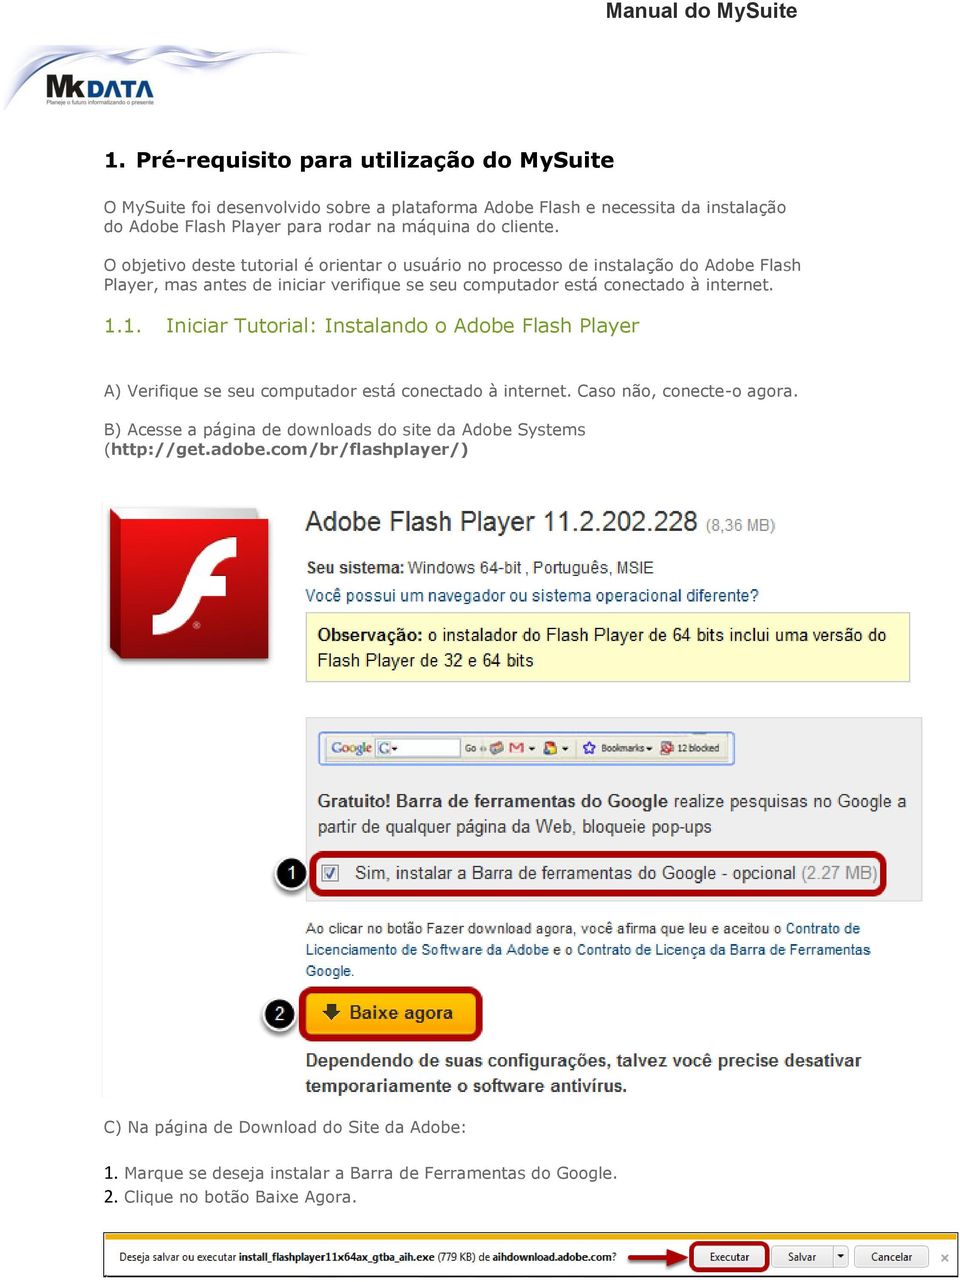 1. Iniciar Tutorial: Instalando o Adobe Flash Player A) Verifique se seu computador está conectado à internet. Caso não, conecte-o agora.